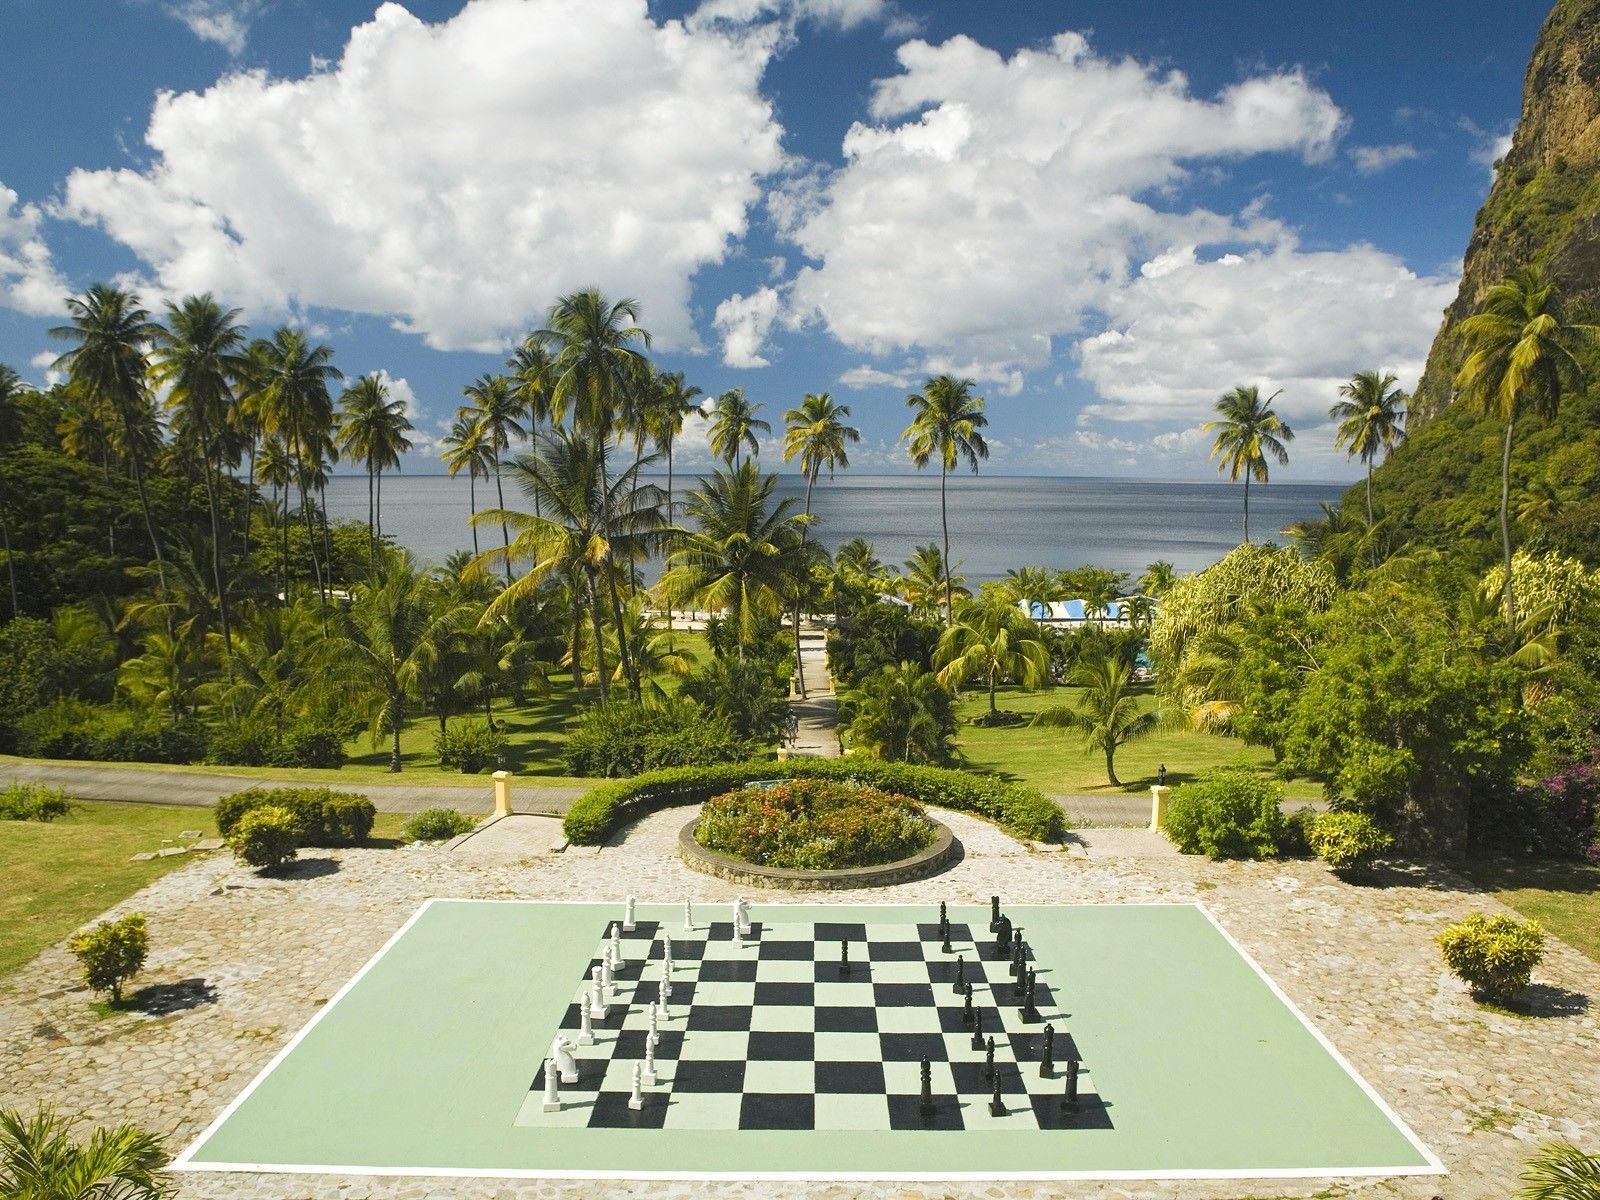 Plantation Lucia chess board wallpaper | 1600x1200 | 59198 ...